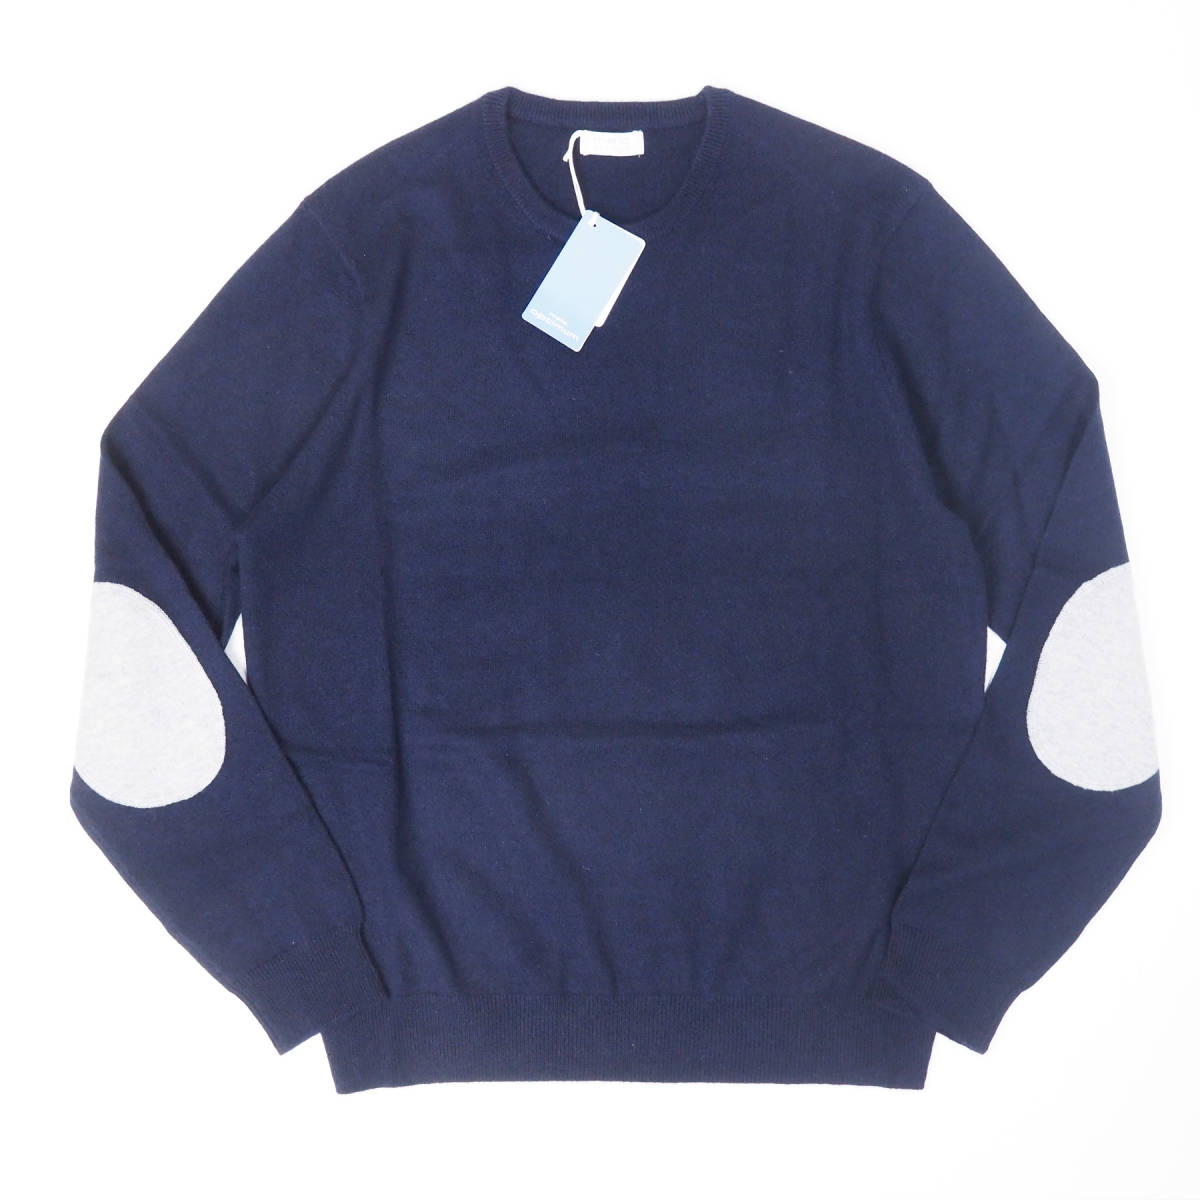  новый товар стандартный товар Malo optimumma-romaro шерсть кашемир высший класс патрубок patch вязаный свитер темно-синий XL(52 соответствует )